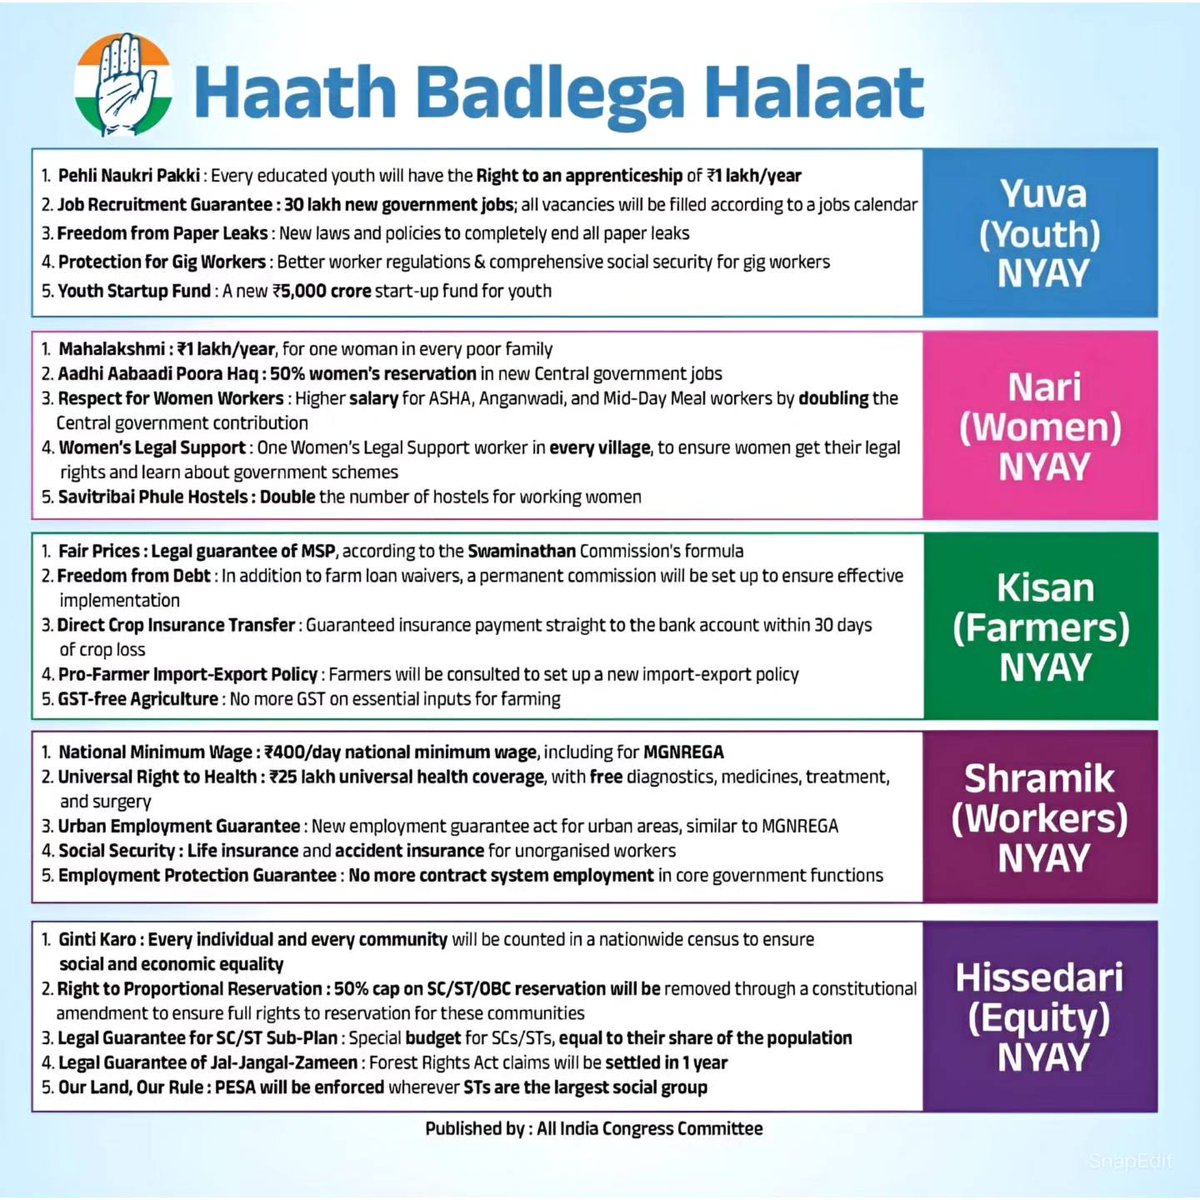 Congress Guarantee Card

#HaathDegaSaathBadlengaHaalat 
#HaathBadlegaHaalat 
#CongressForProgress